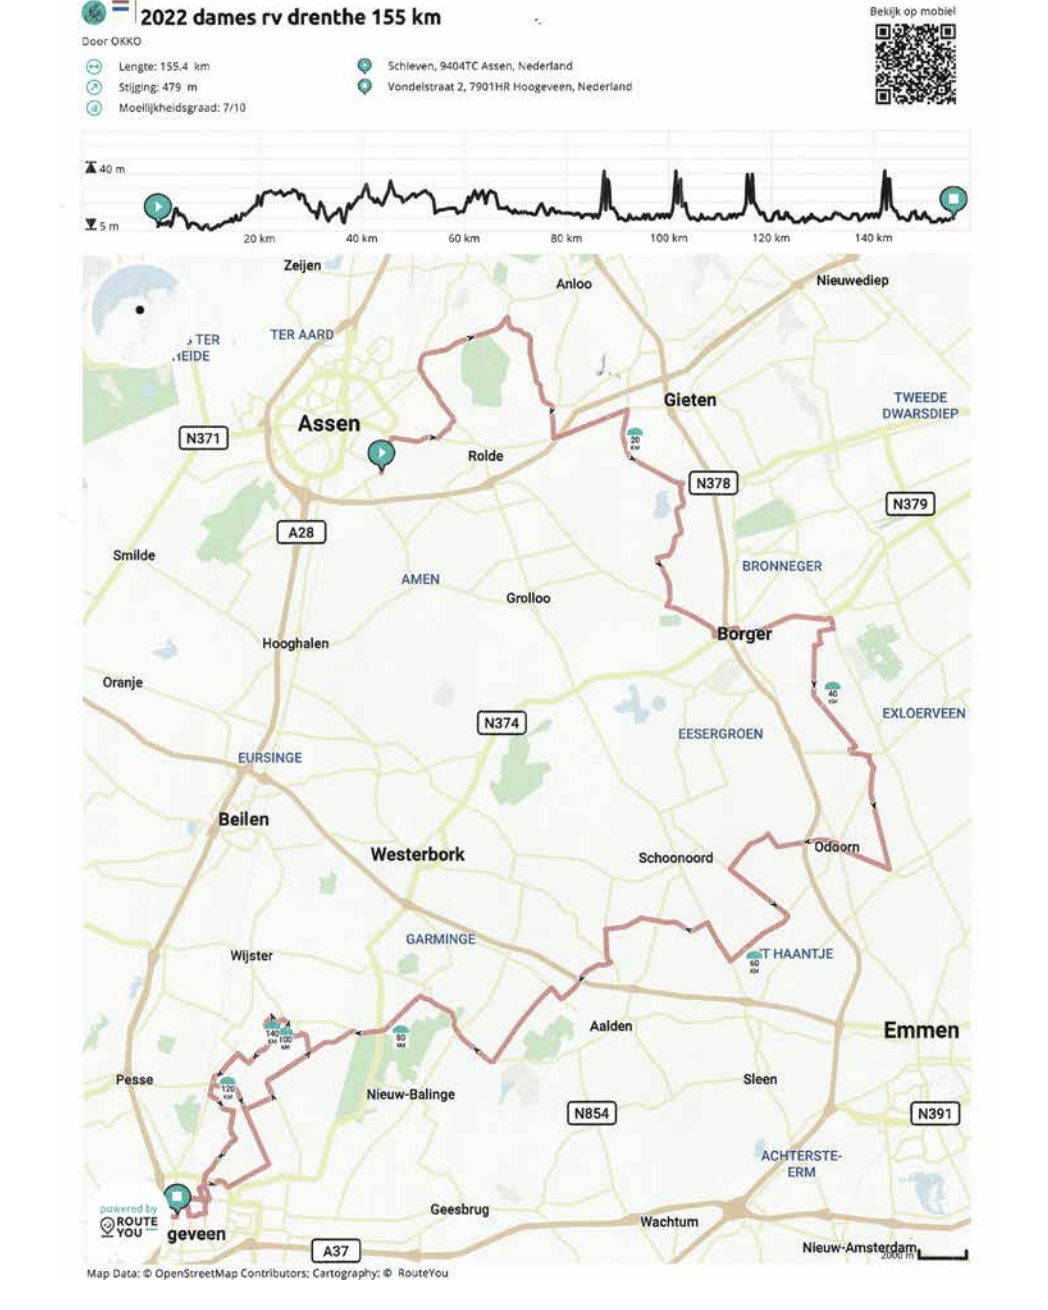 Ronde van Drenthe 2022 - Map